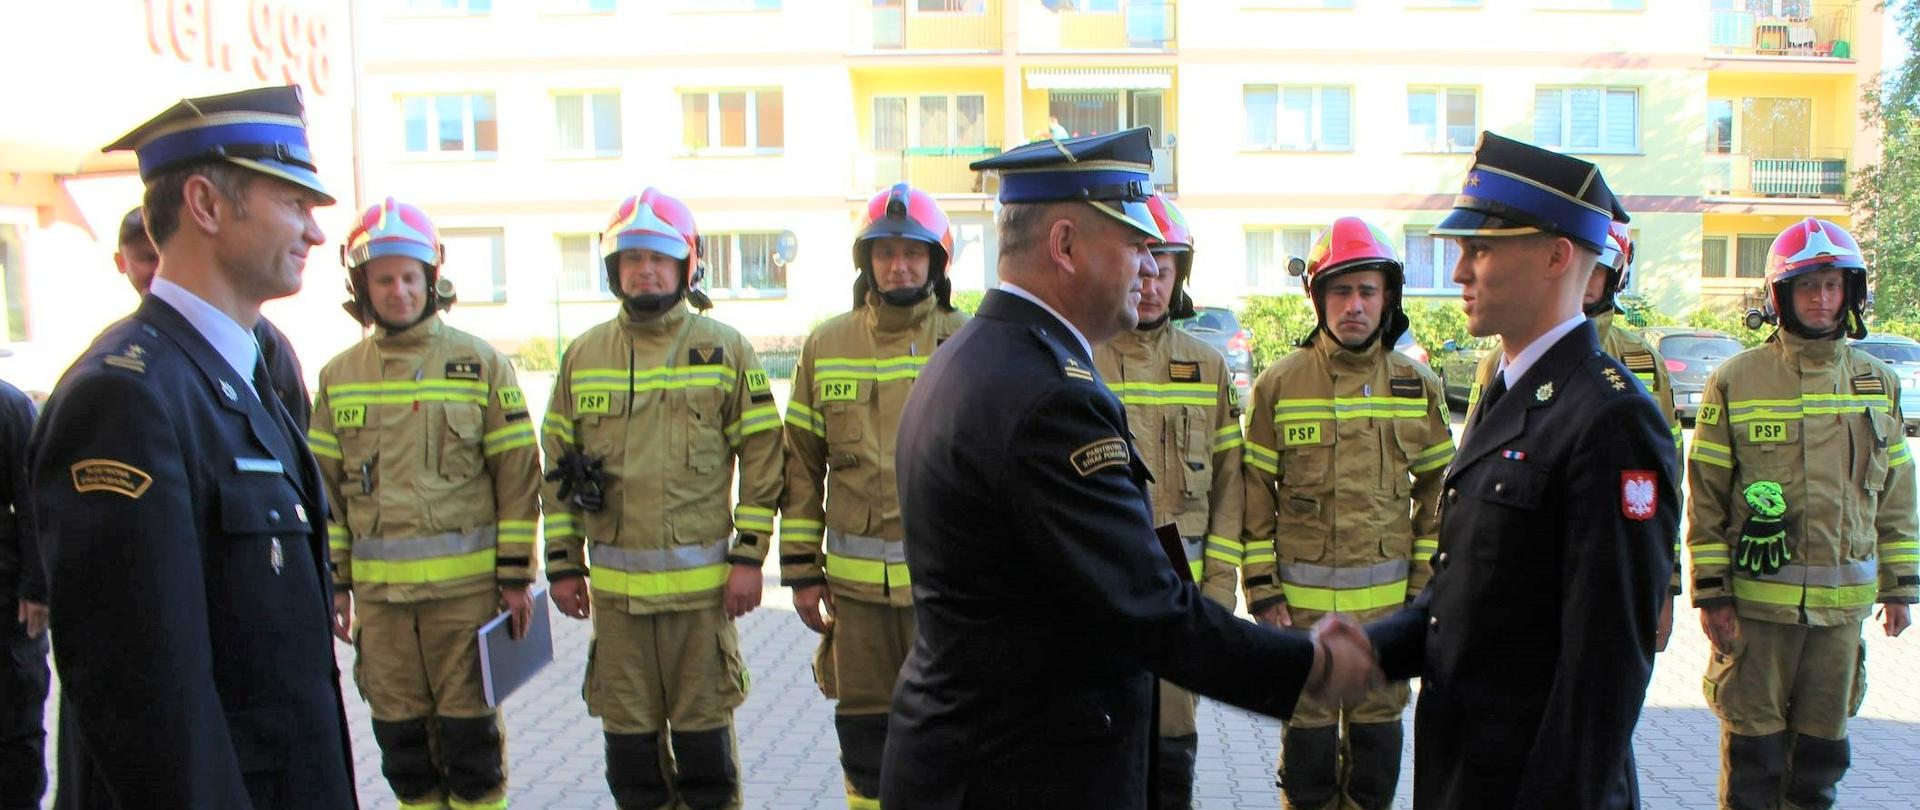 Zdjęcie przedstawia uroczyste wręczenie decyzji nagrodowej dla strażaka.
W tle plac Komendy, inni strażacy i budynki.
